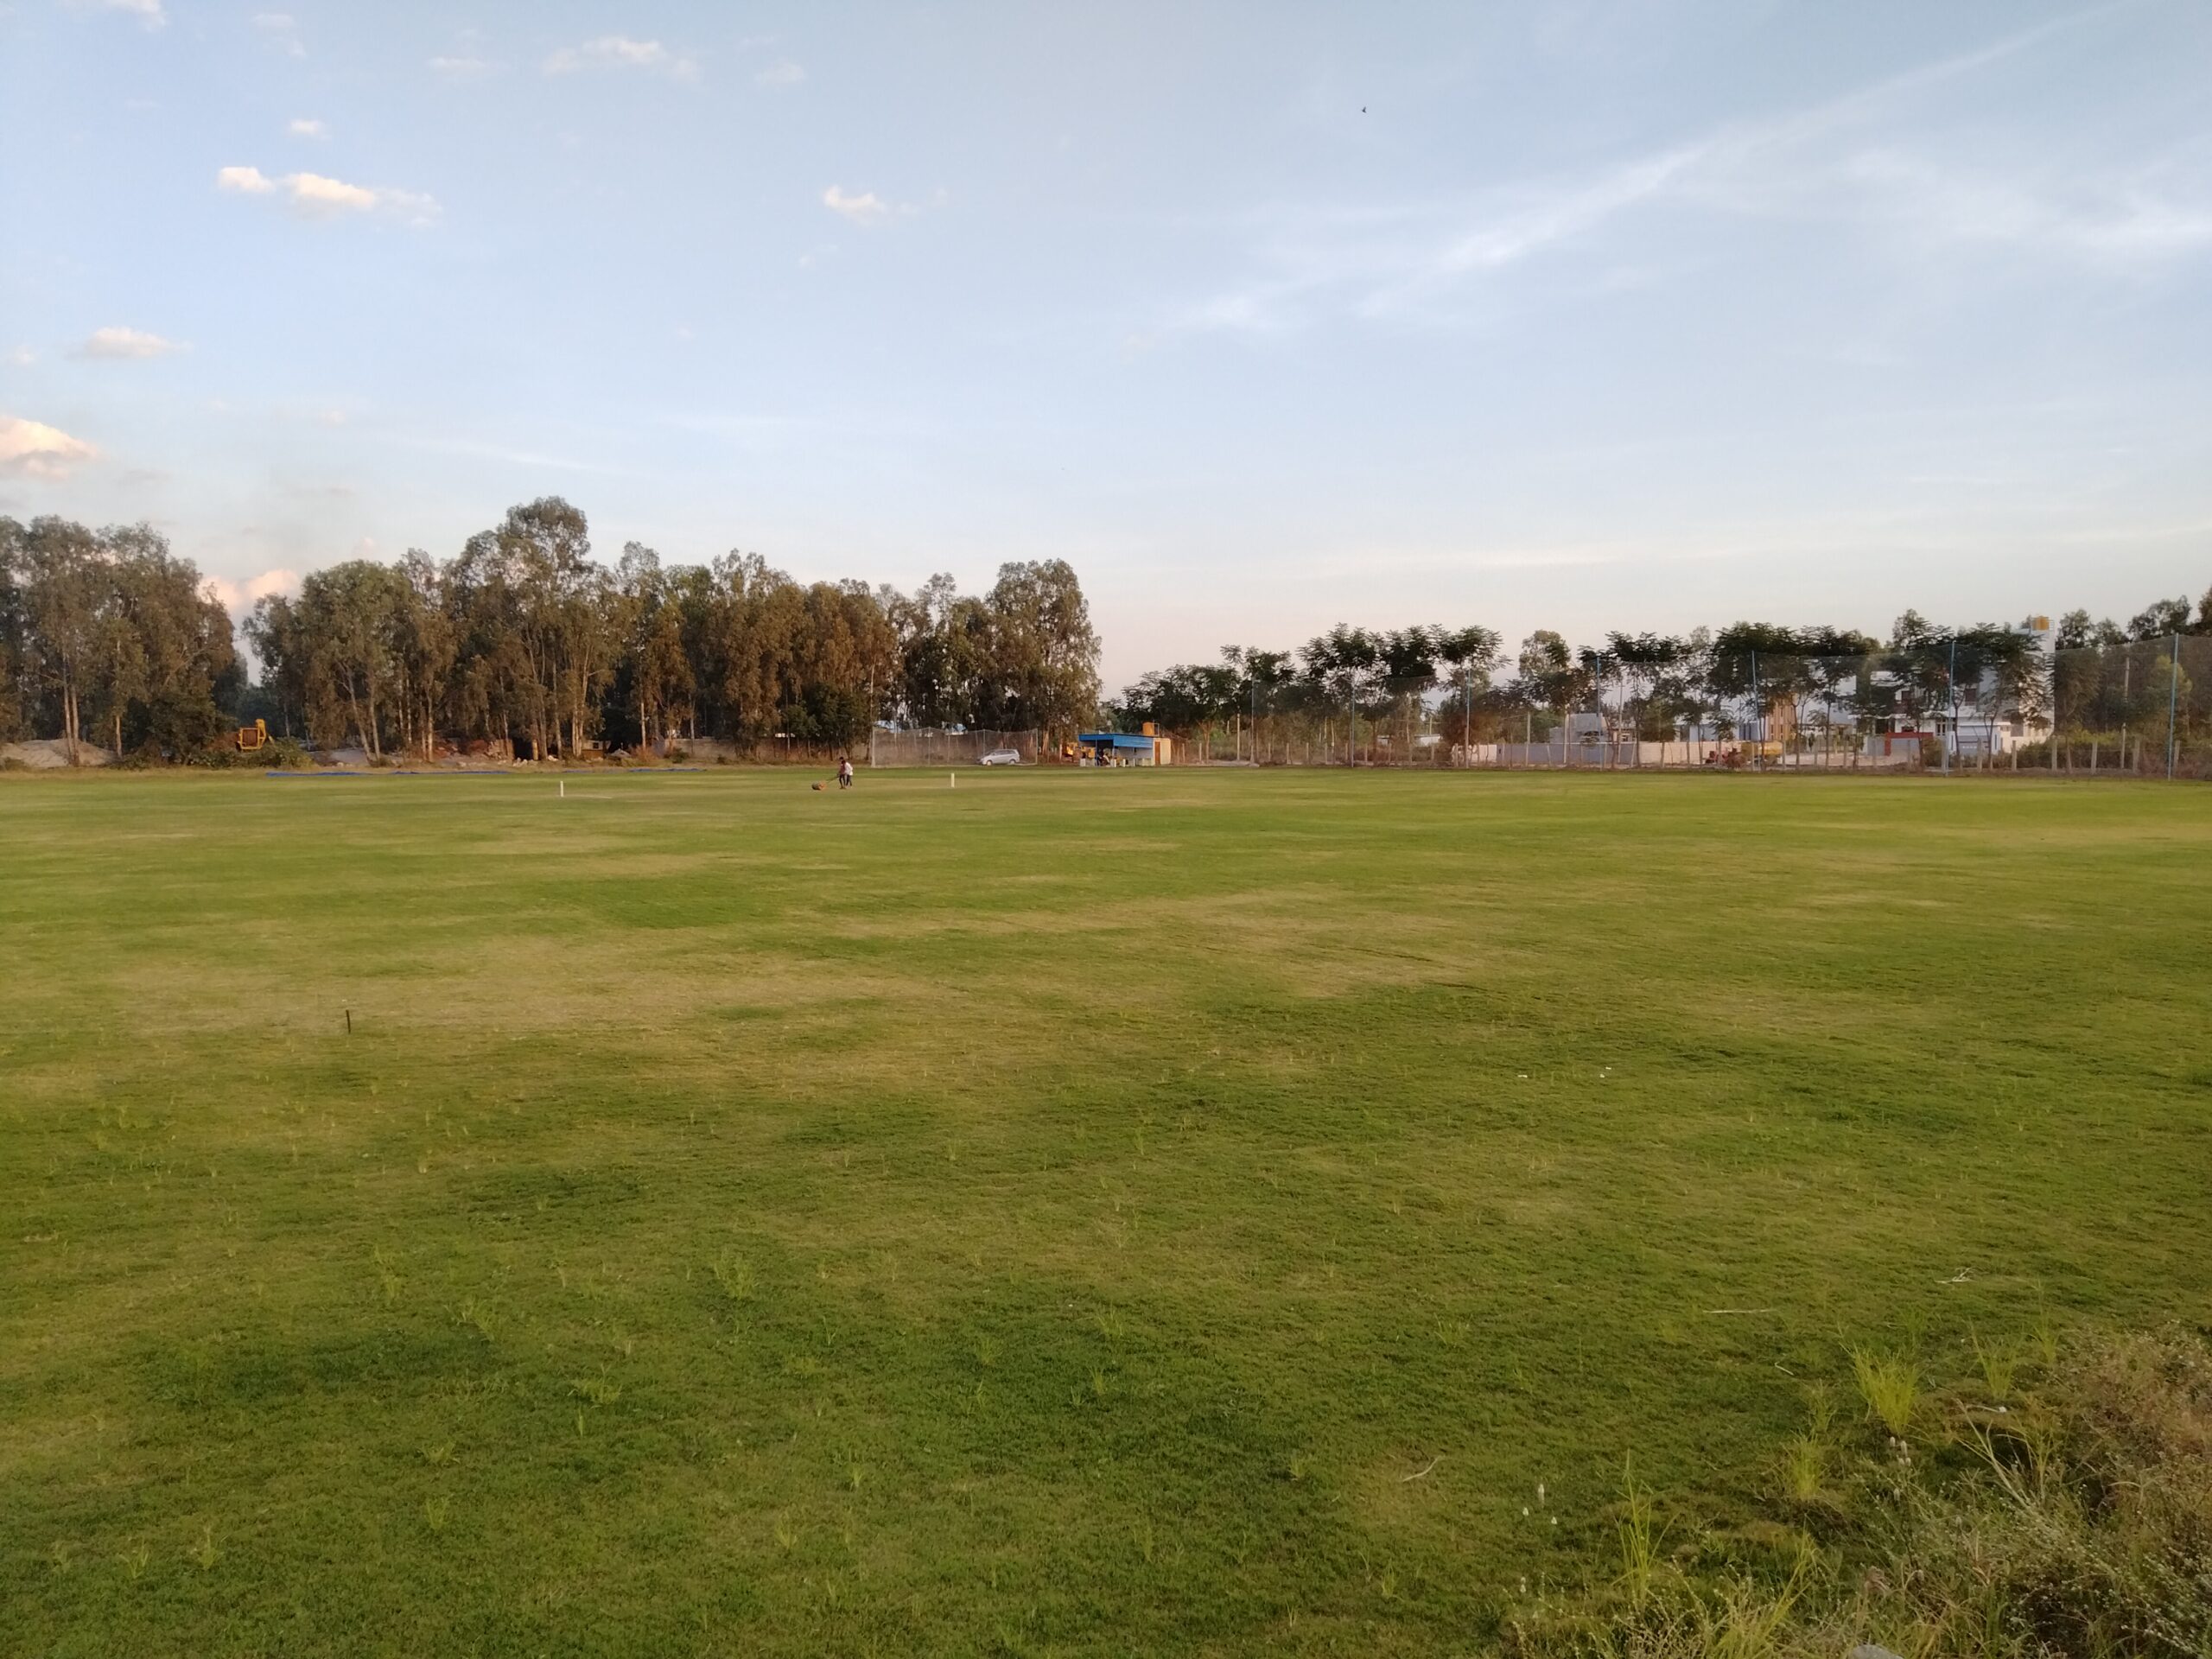 VKCA Cricket ground